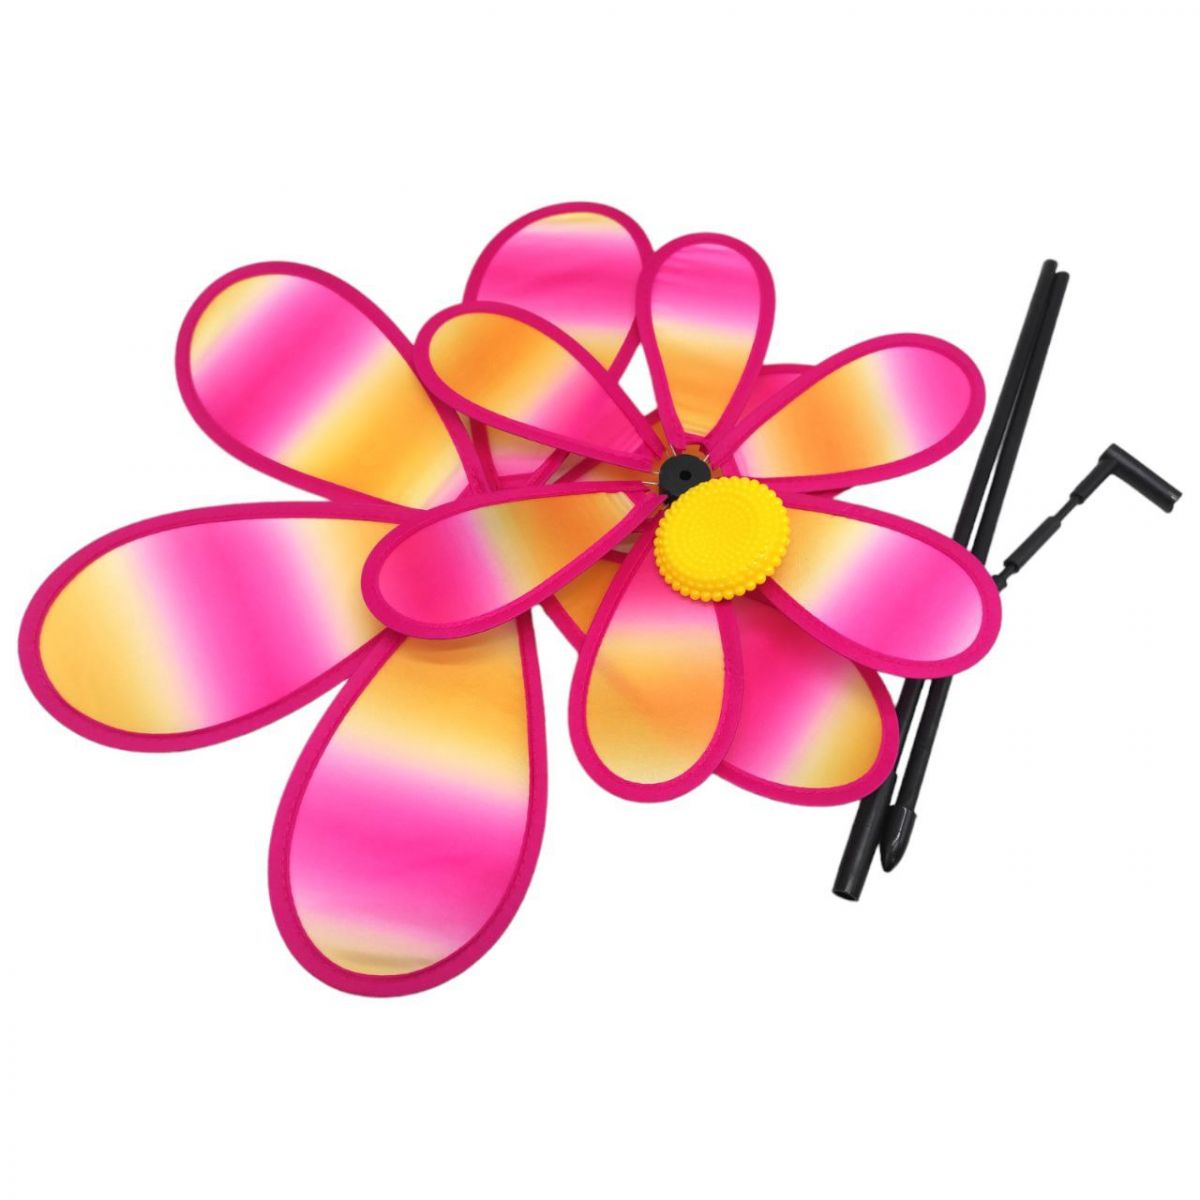 Ветрячок "Цветочек", диаметр 38 см, розовый